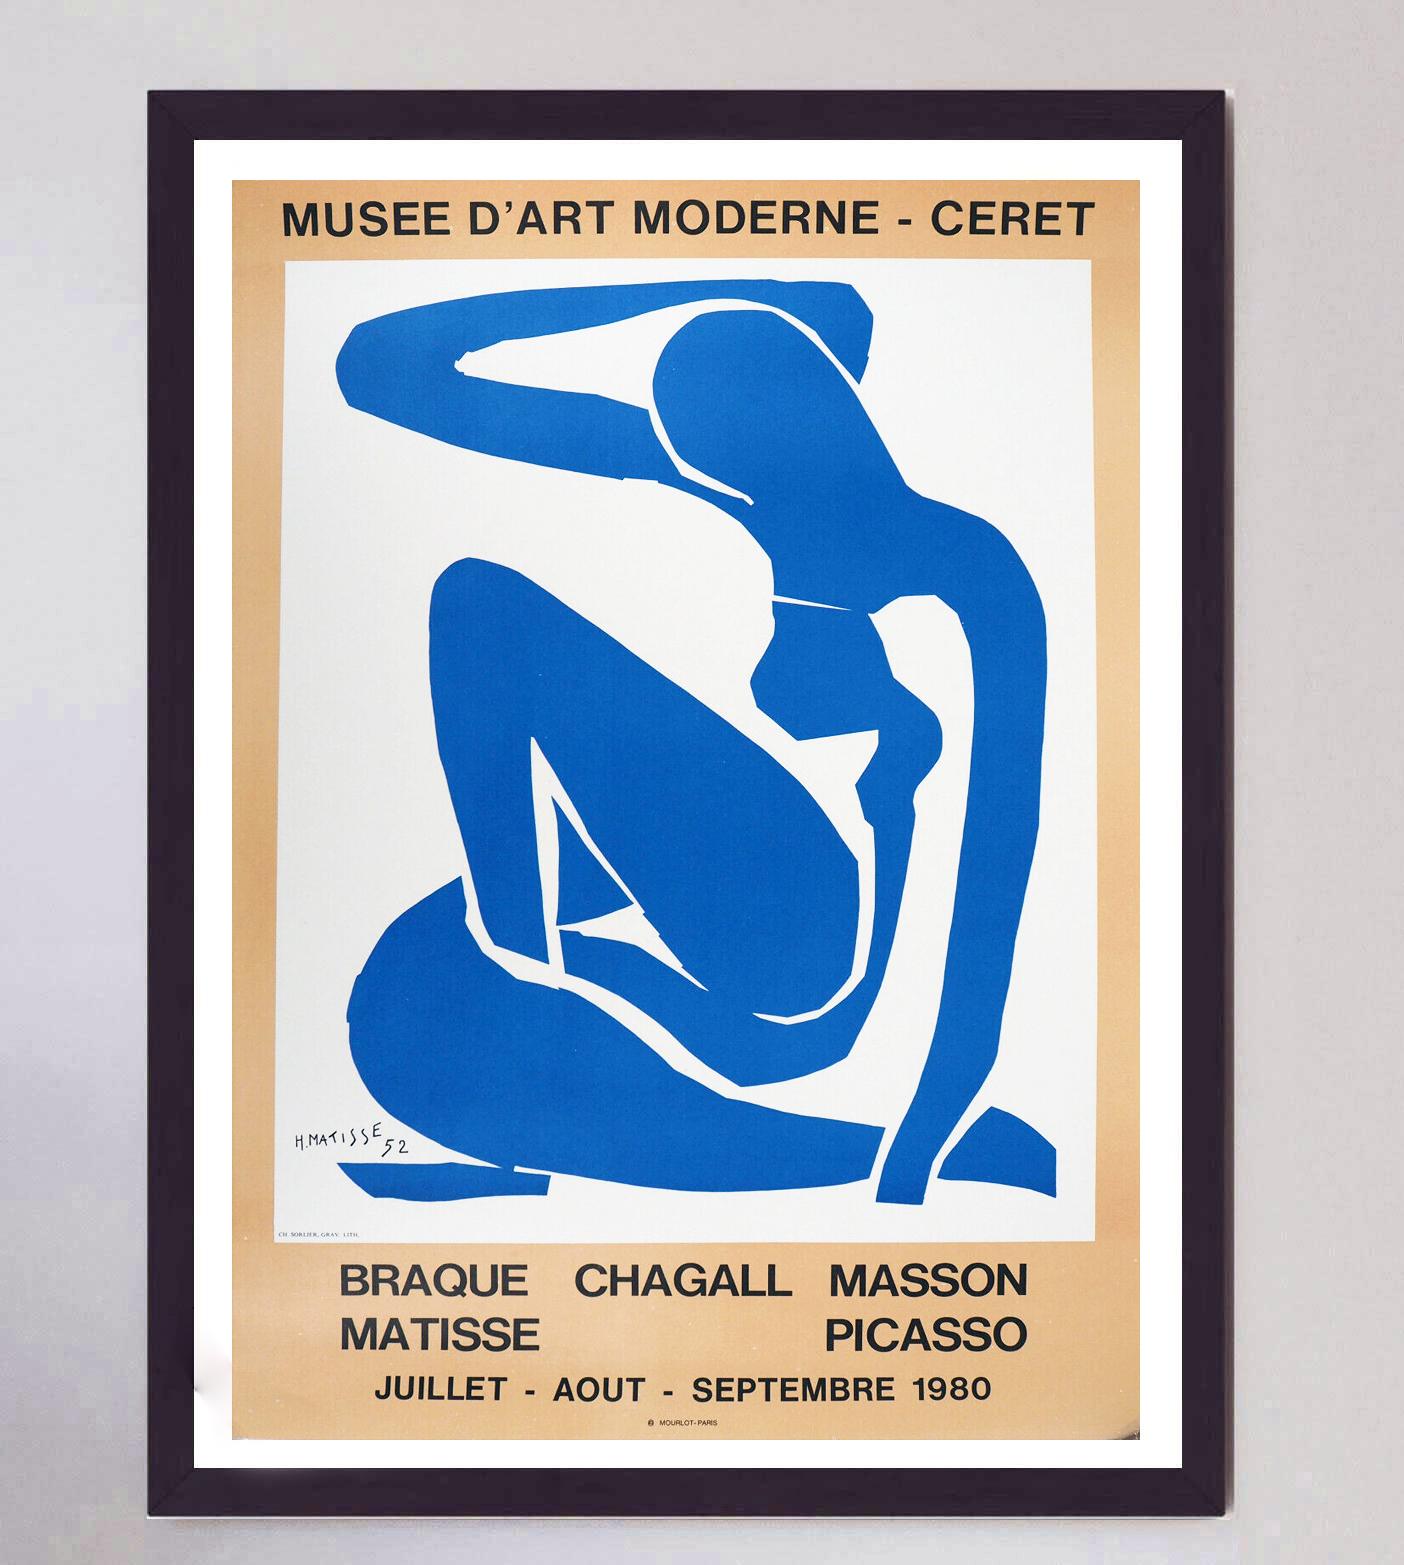 Dieses wunderschöne Plakat zeigt Nud Bleu II aus der Cut-Out-Serie der späten 1940er Jahre und diente der Werbung für eine Ausstellung im Musee d'Art Moderne in Ceret, die Werke des Malers Matisse sowie von Braque, Chagall, Masson und Picasso